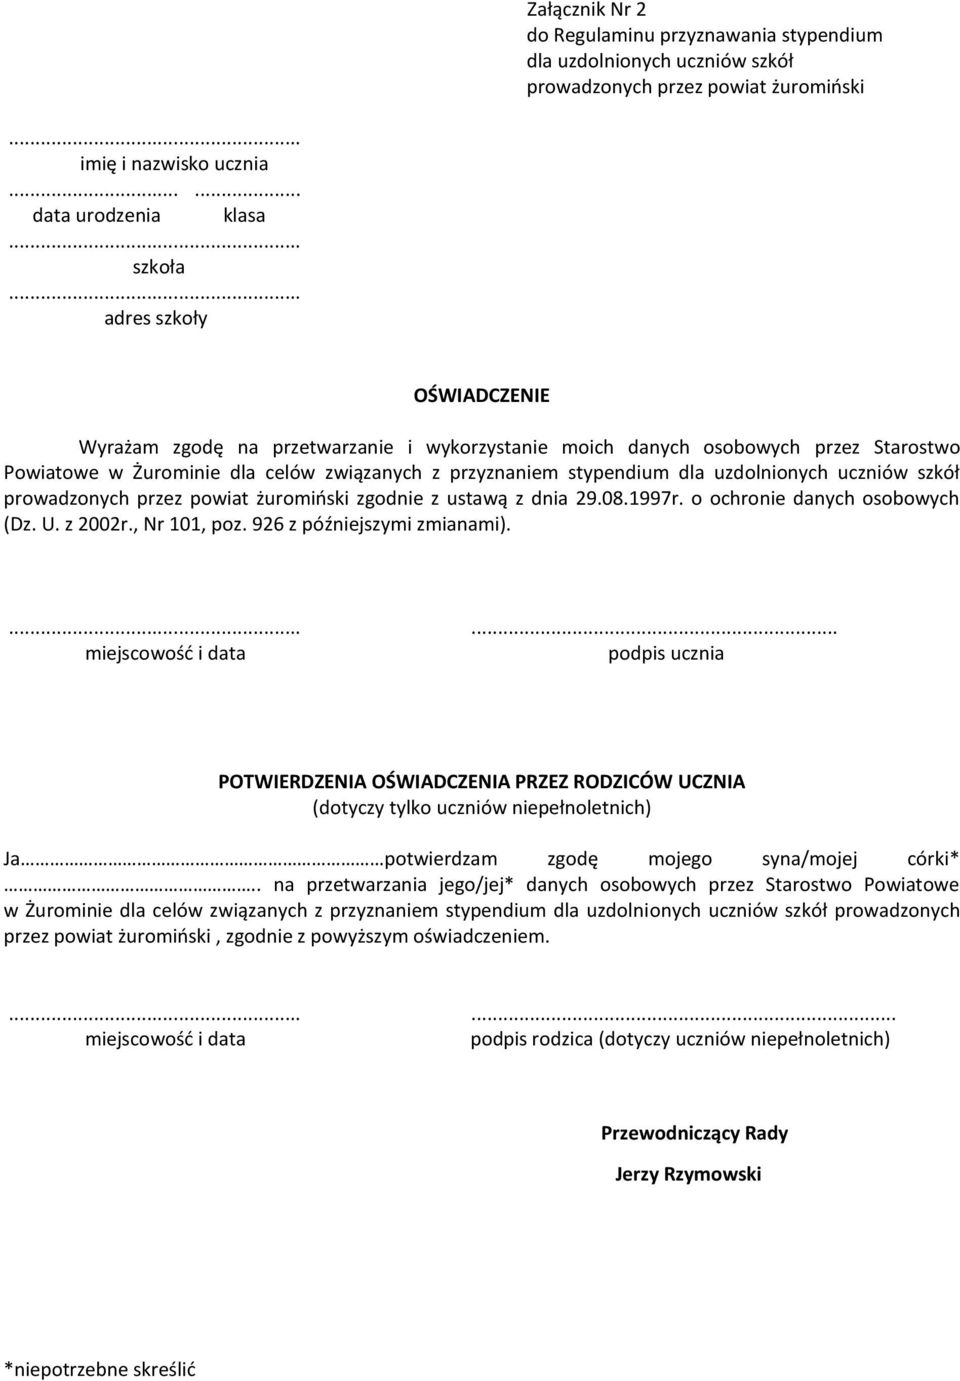 uczniów szkół prowadzonych przez powiat żuromiński zgodnie z ustawą z dnia 29.08.1997r. o ochronie danych osobowych (Dz. U. z 2002r., Nr 101, poz. 926 z późniejszymi zmianami).